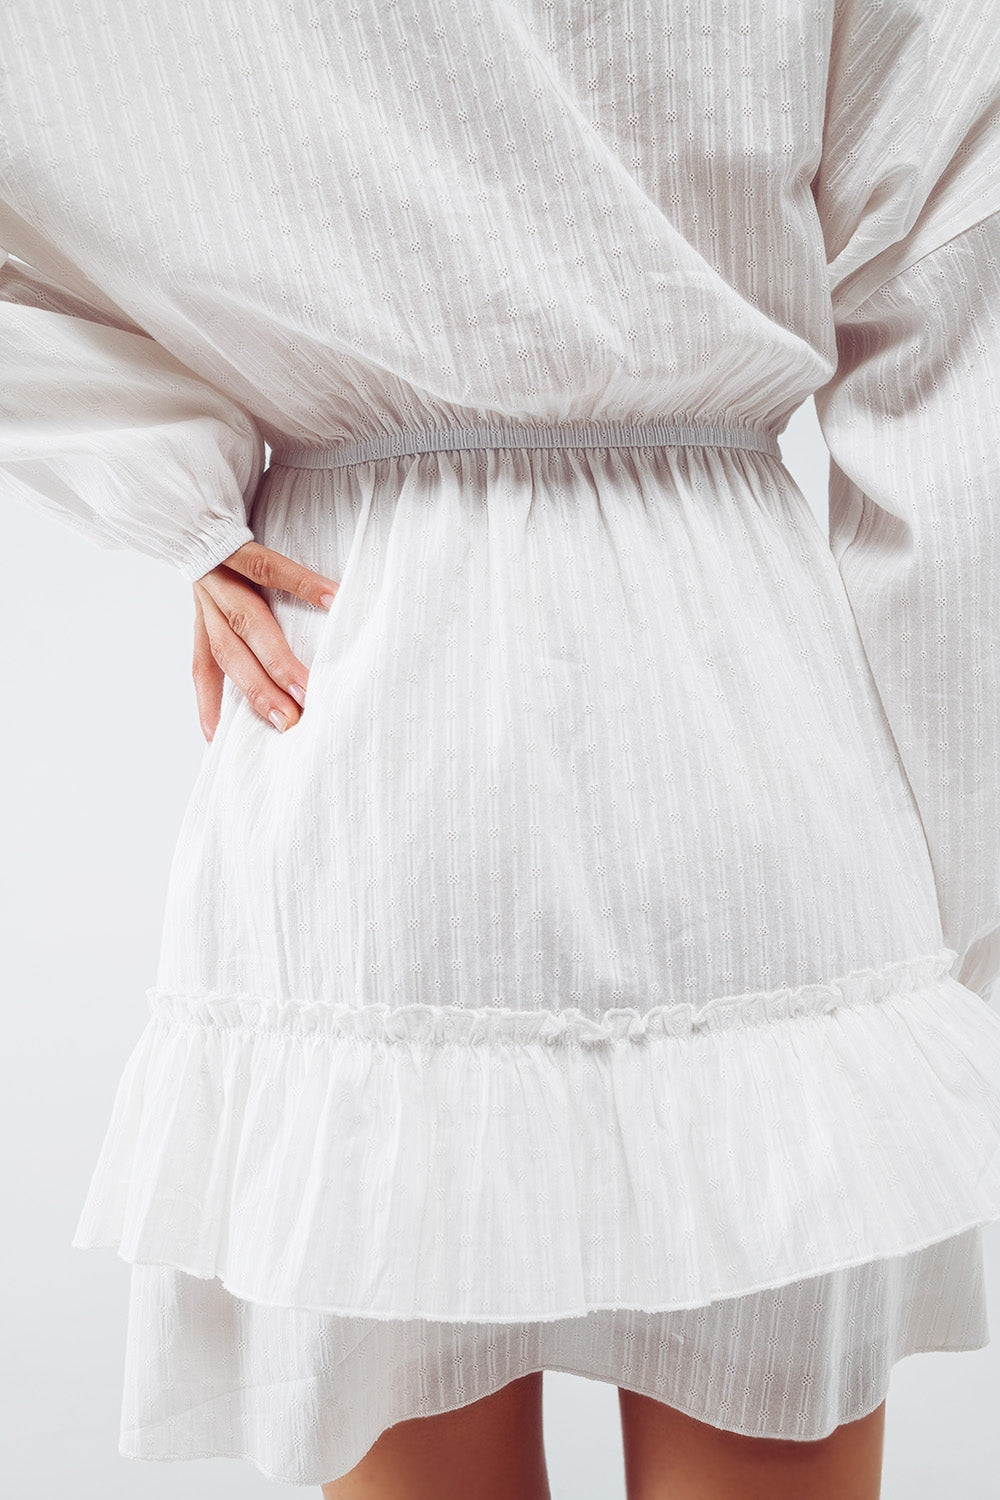 Long Sleeve Skater Textured Short Dress in White - Szua Store